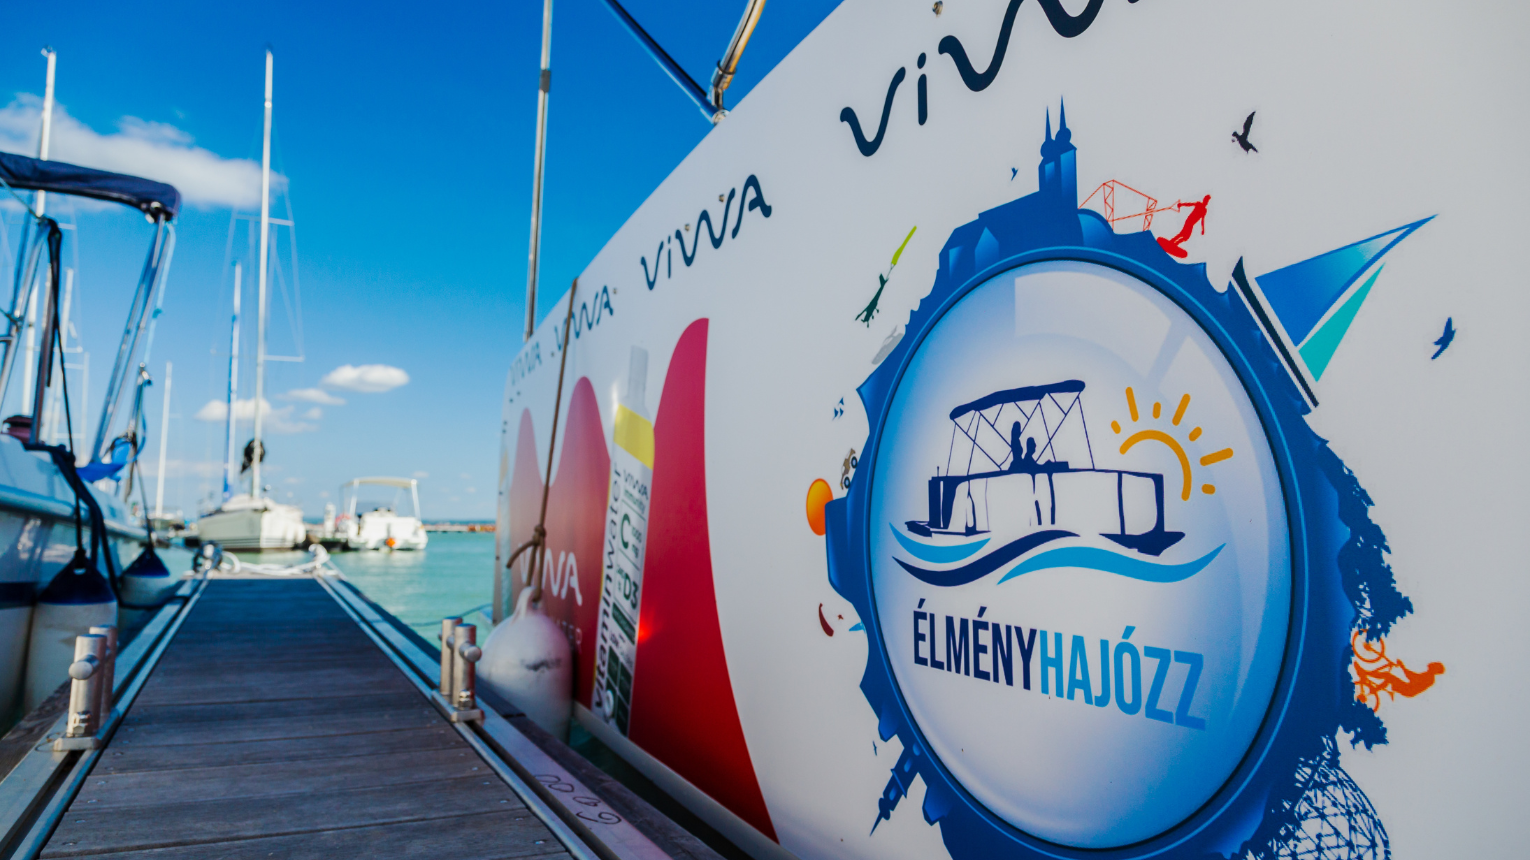 Hétvégi kikapcsolódás! Elektromos hajó bérlés Balaton partján